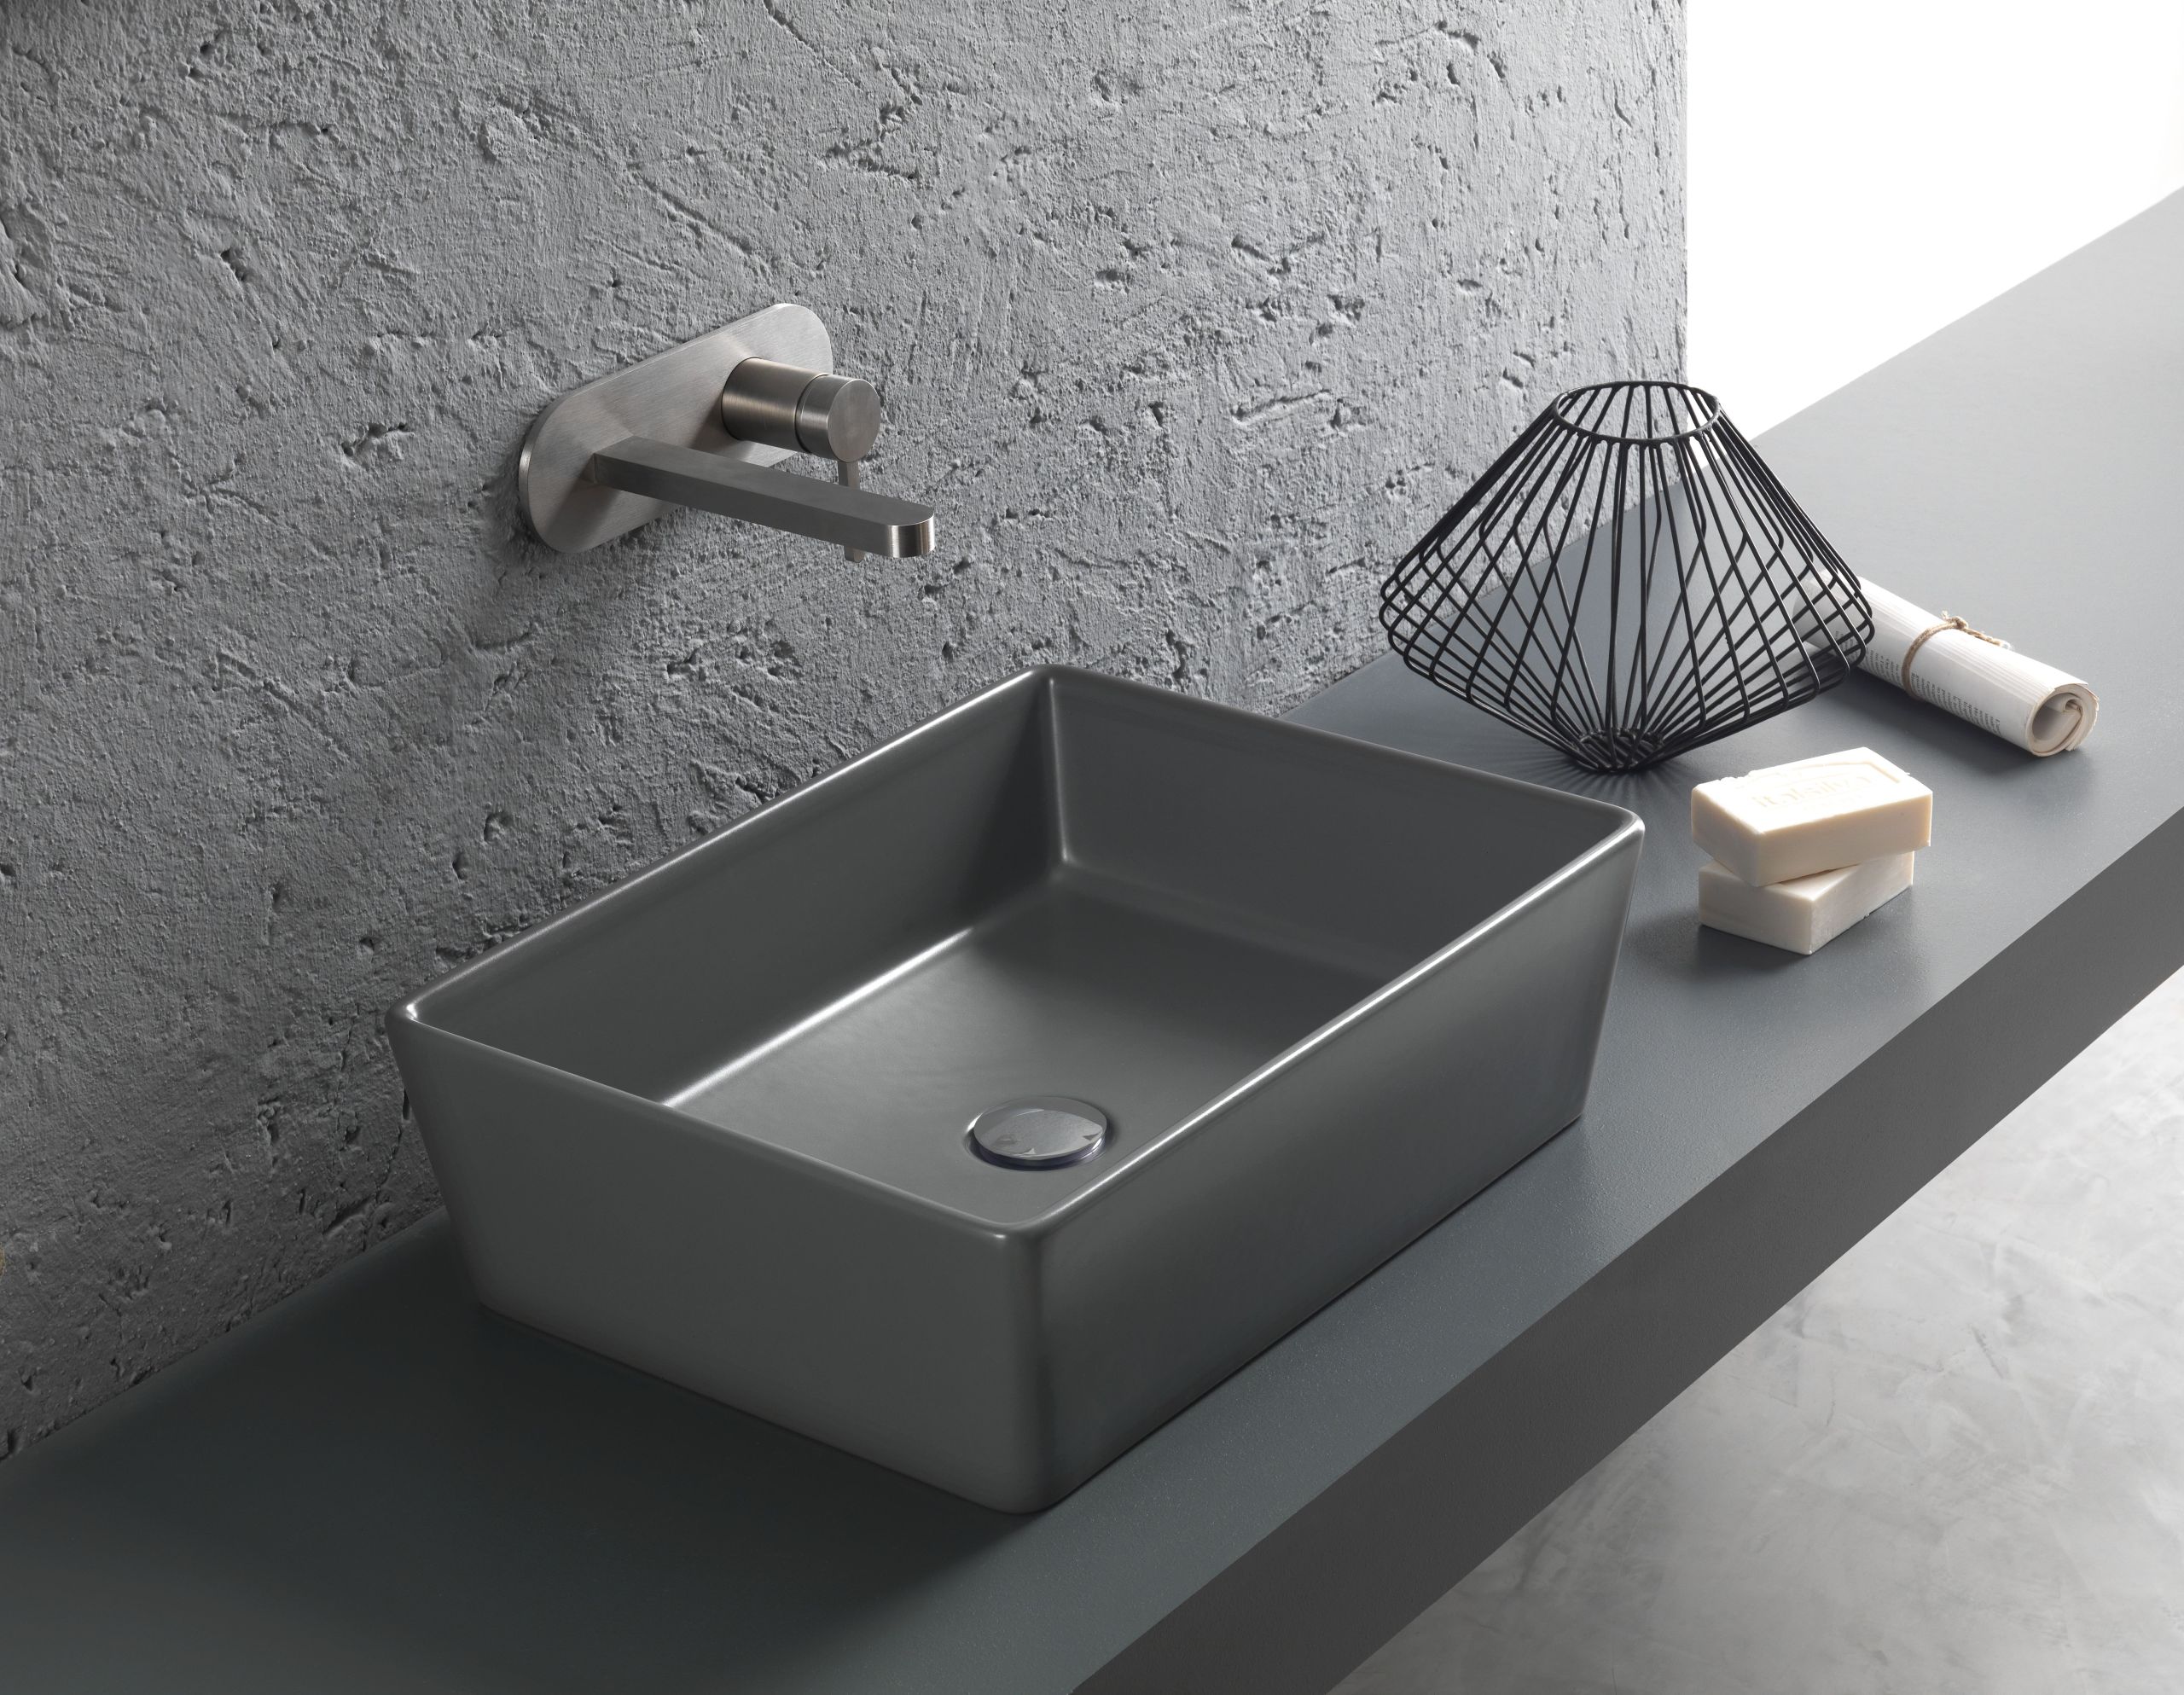 Lavabi di design, Hatria presenta i nuovi modelli in grigio antracite